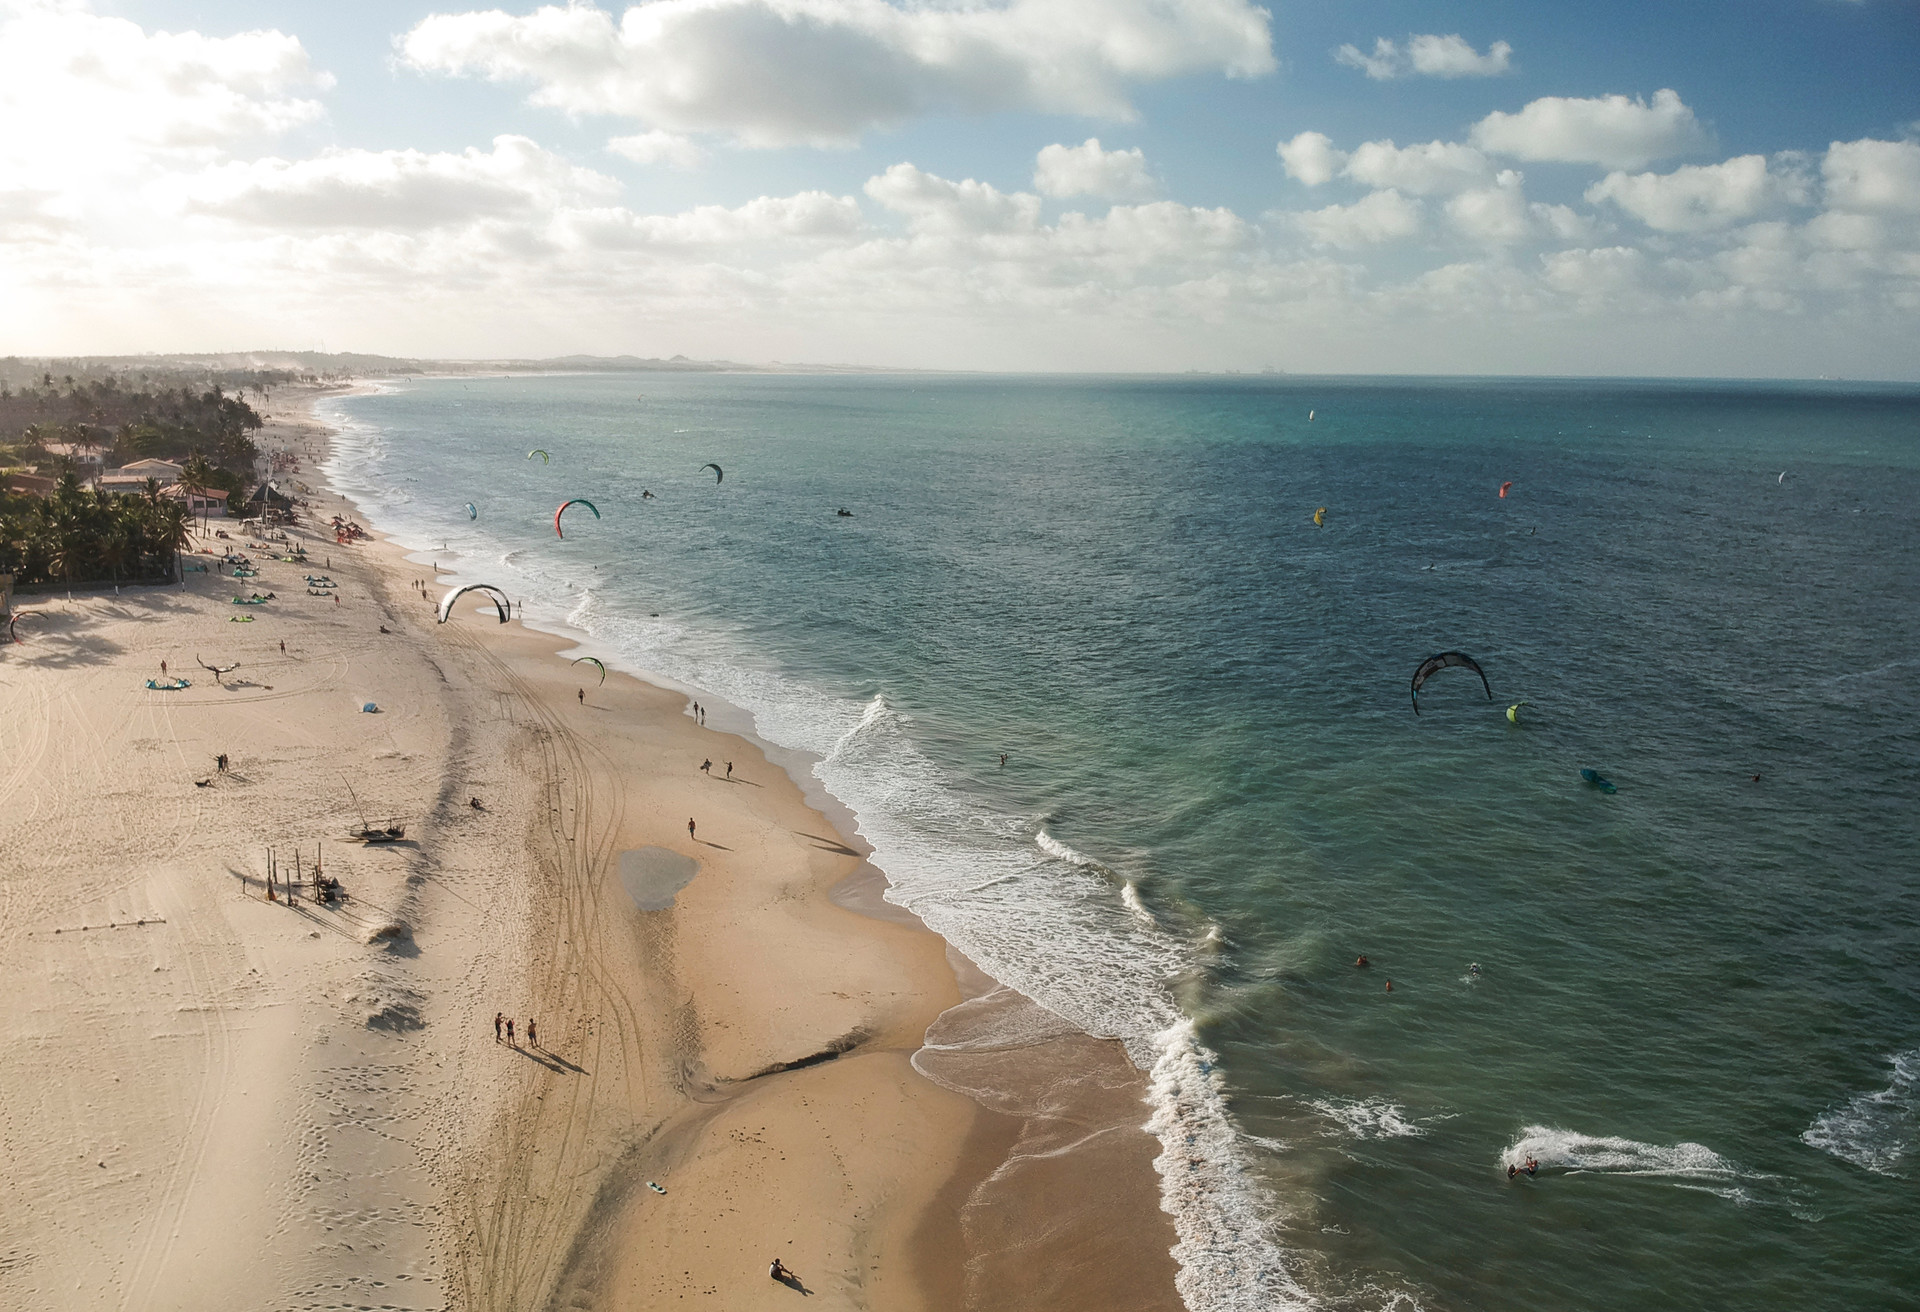 Het Cumboco strand is een populaire spot voor kiters in Brazilië